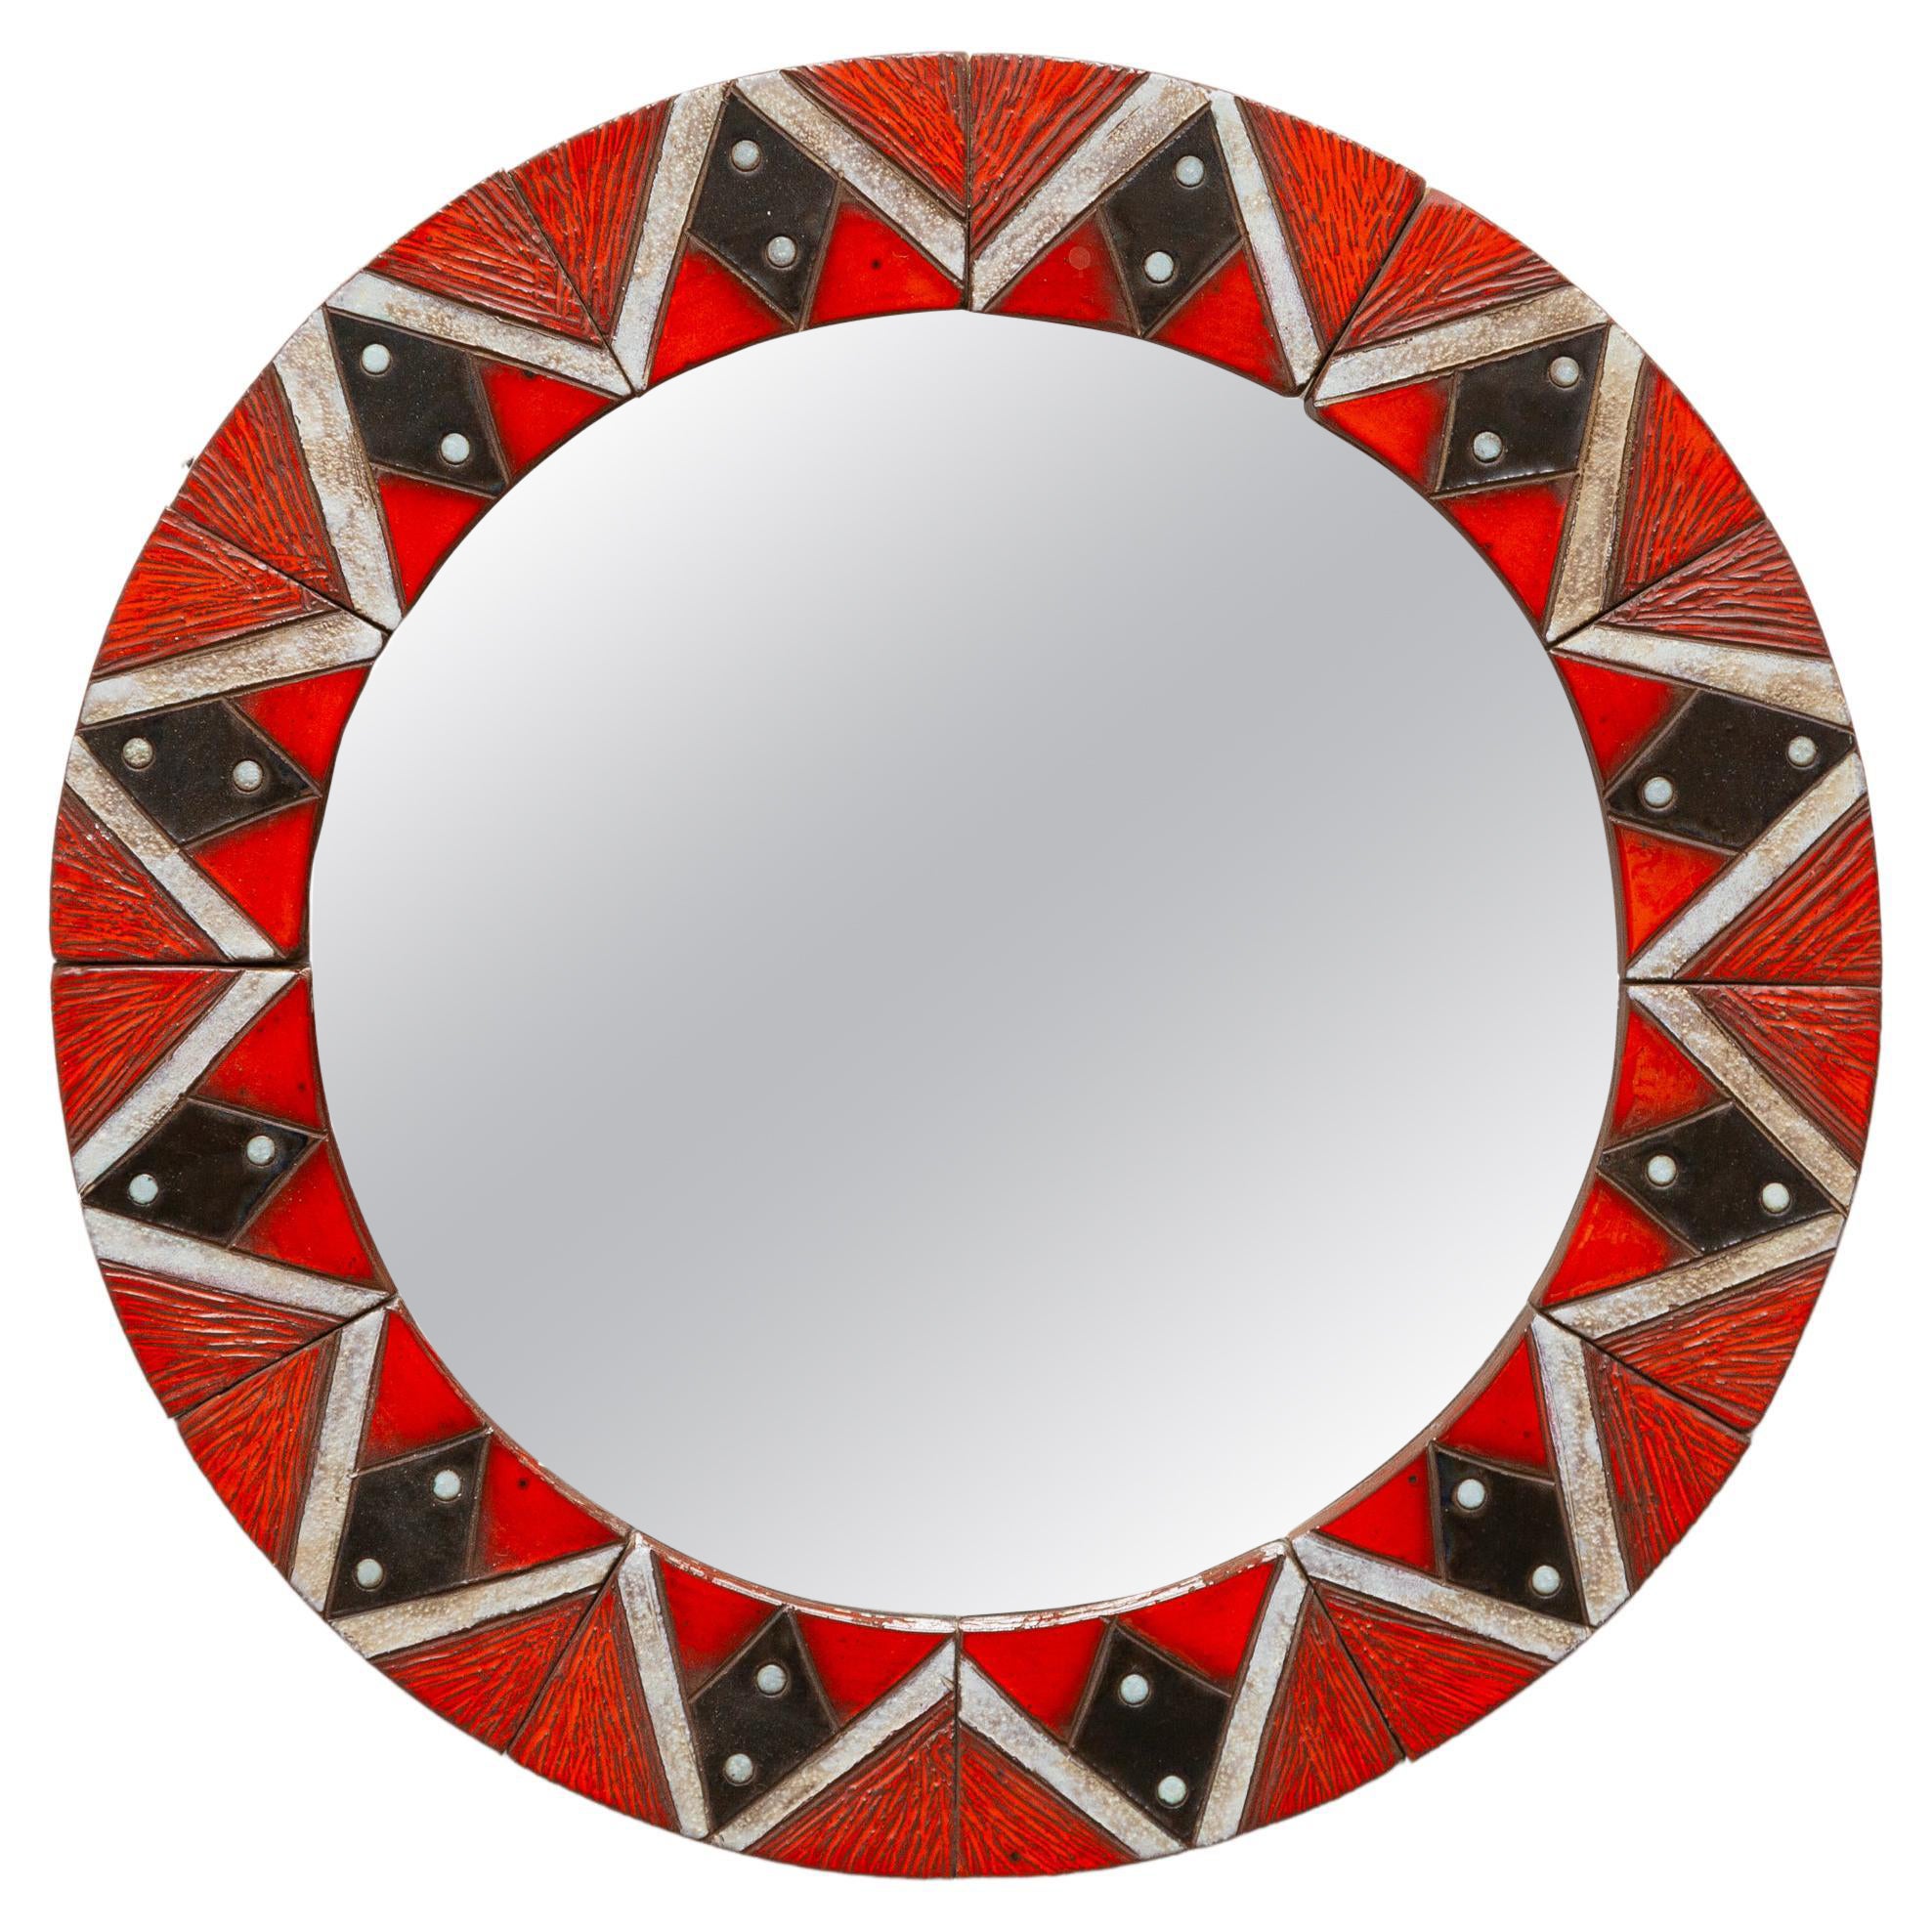 Glazed Ceramic Mosaic Tiles Round Mirror 1960s Belgium by Oswald Tieberghien